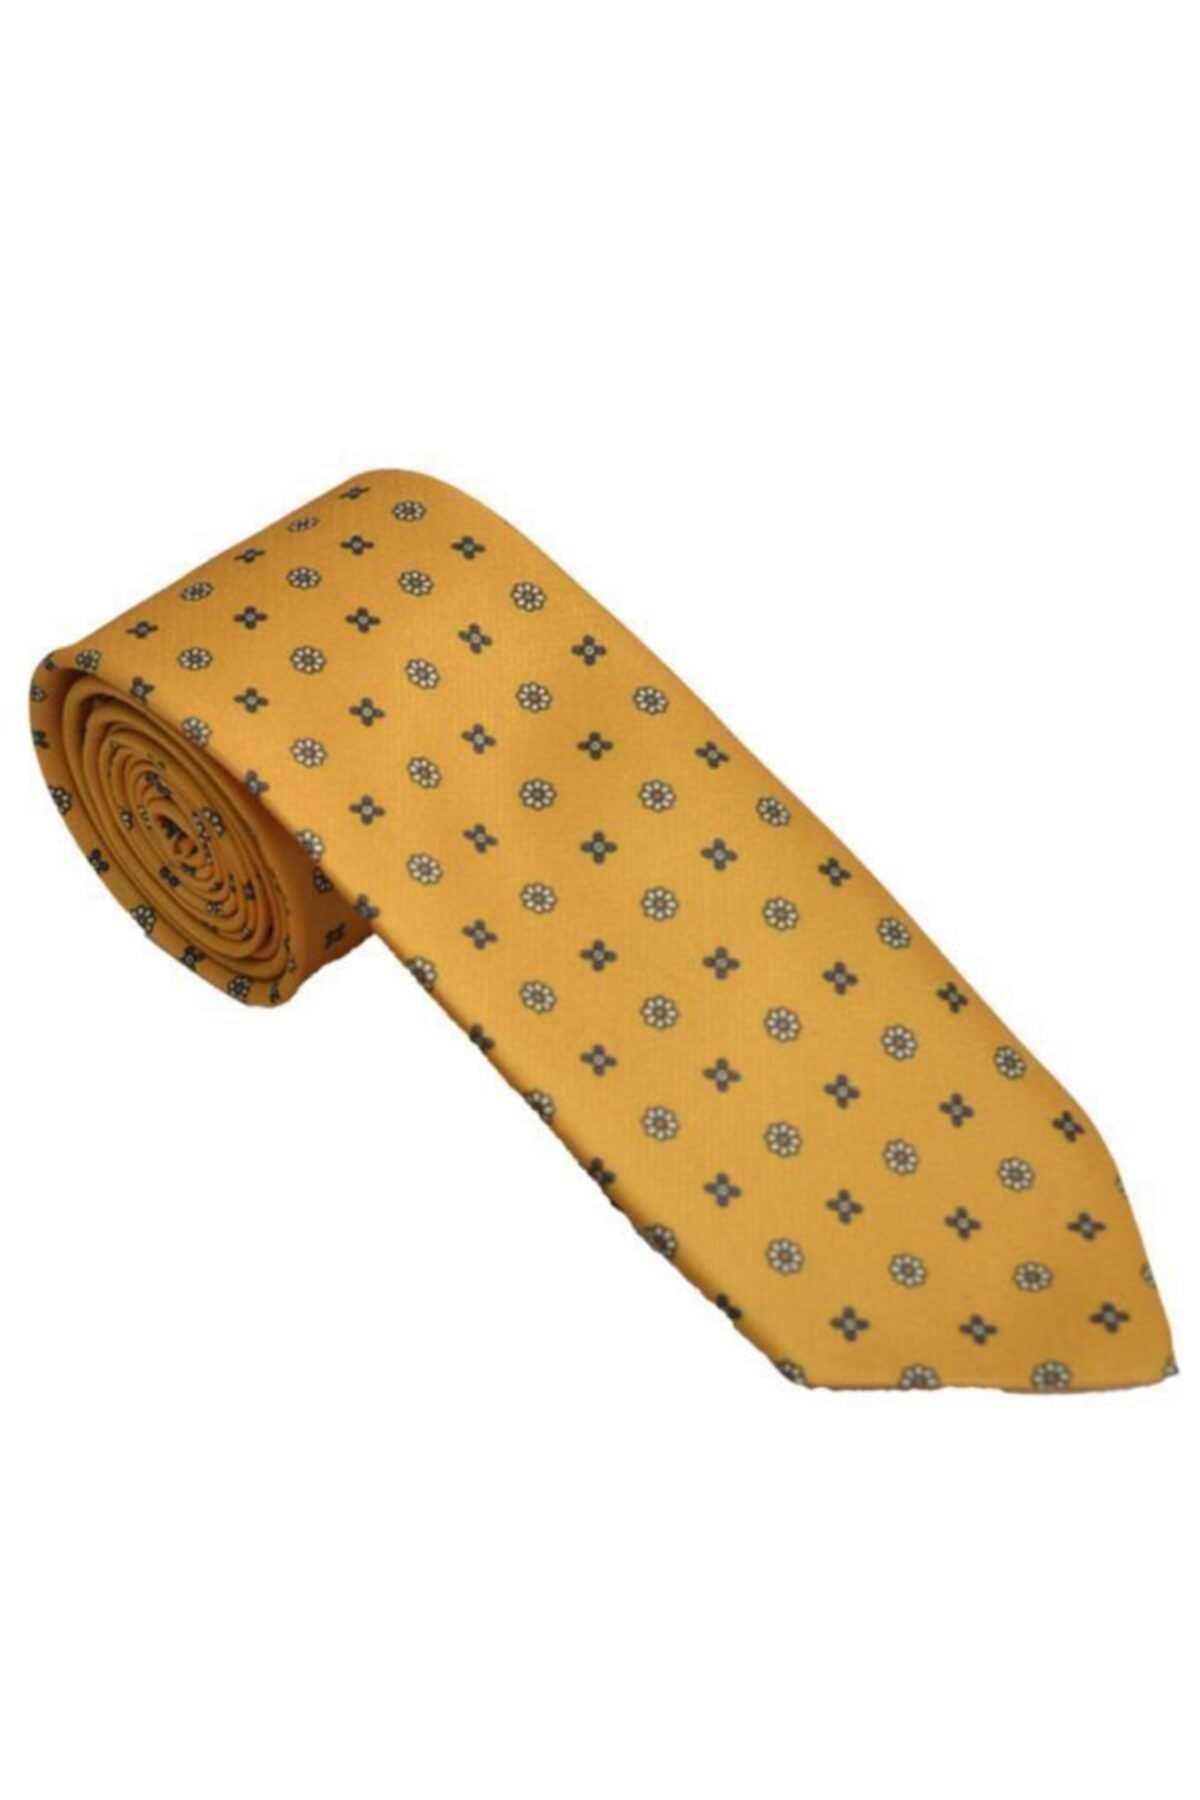 فروش کراوات مردانه خفن برند Brianze رنگ زرد ty88546617